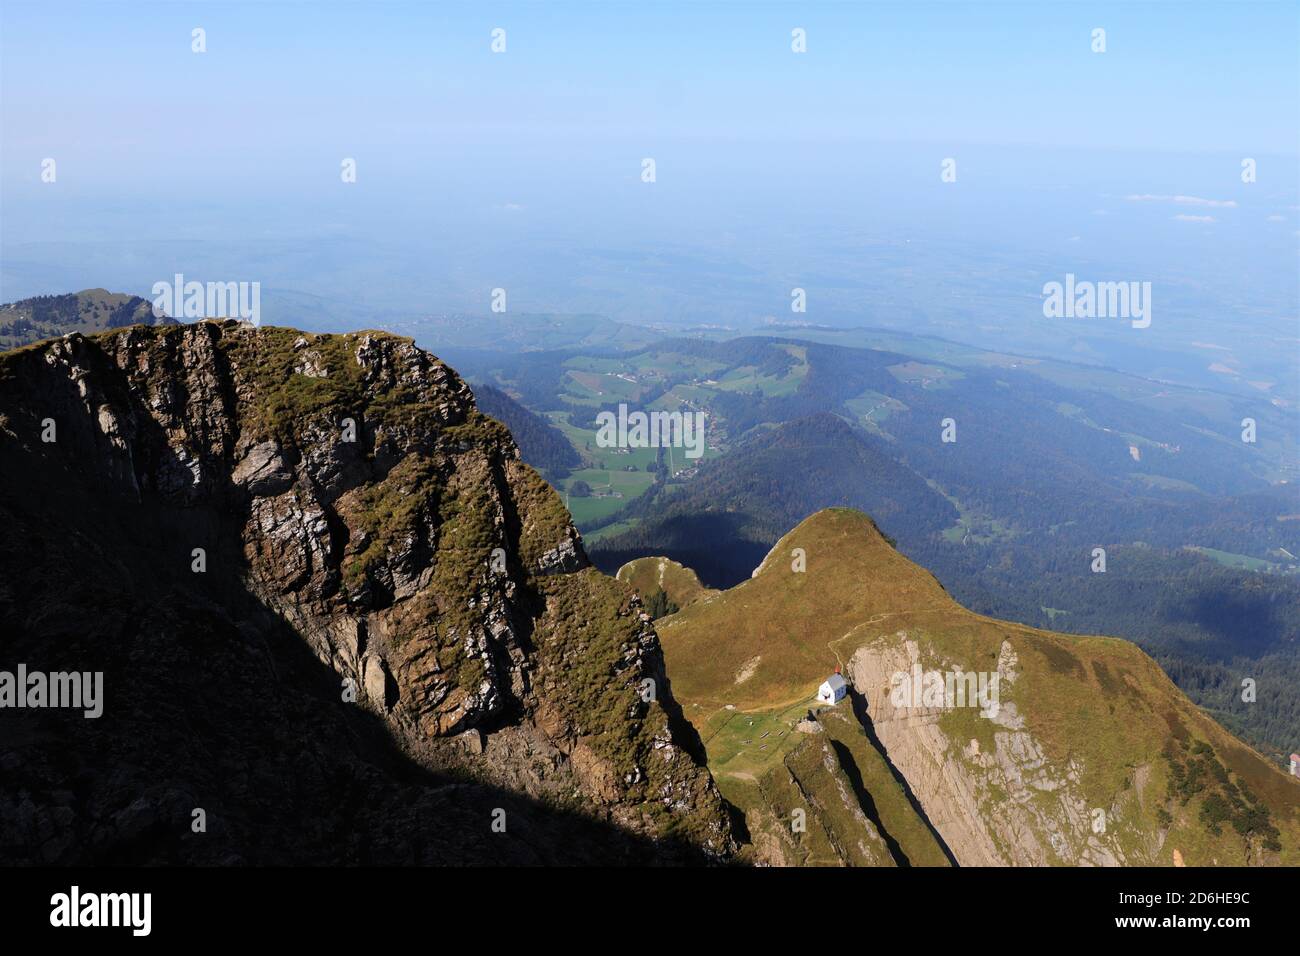 La vue de la chapelle Klimsenhorn depuis le sommet de la montagne Pilatus, Alpes suisses, Suisse Banque D'Images